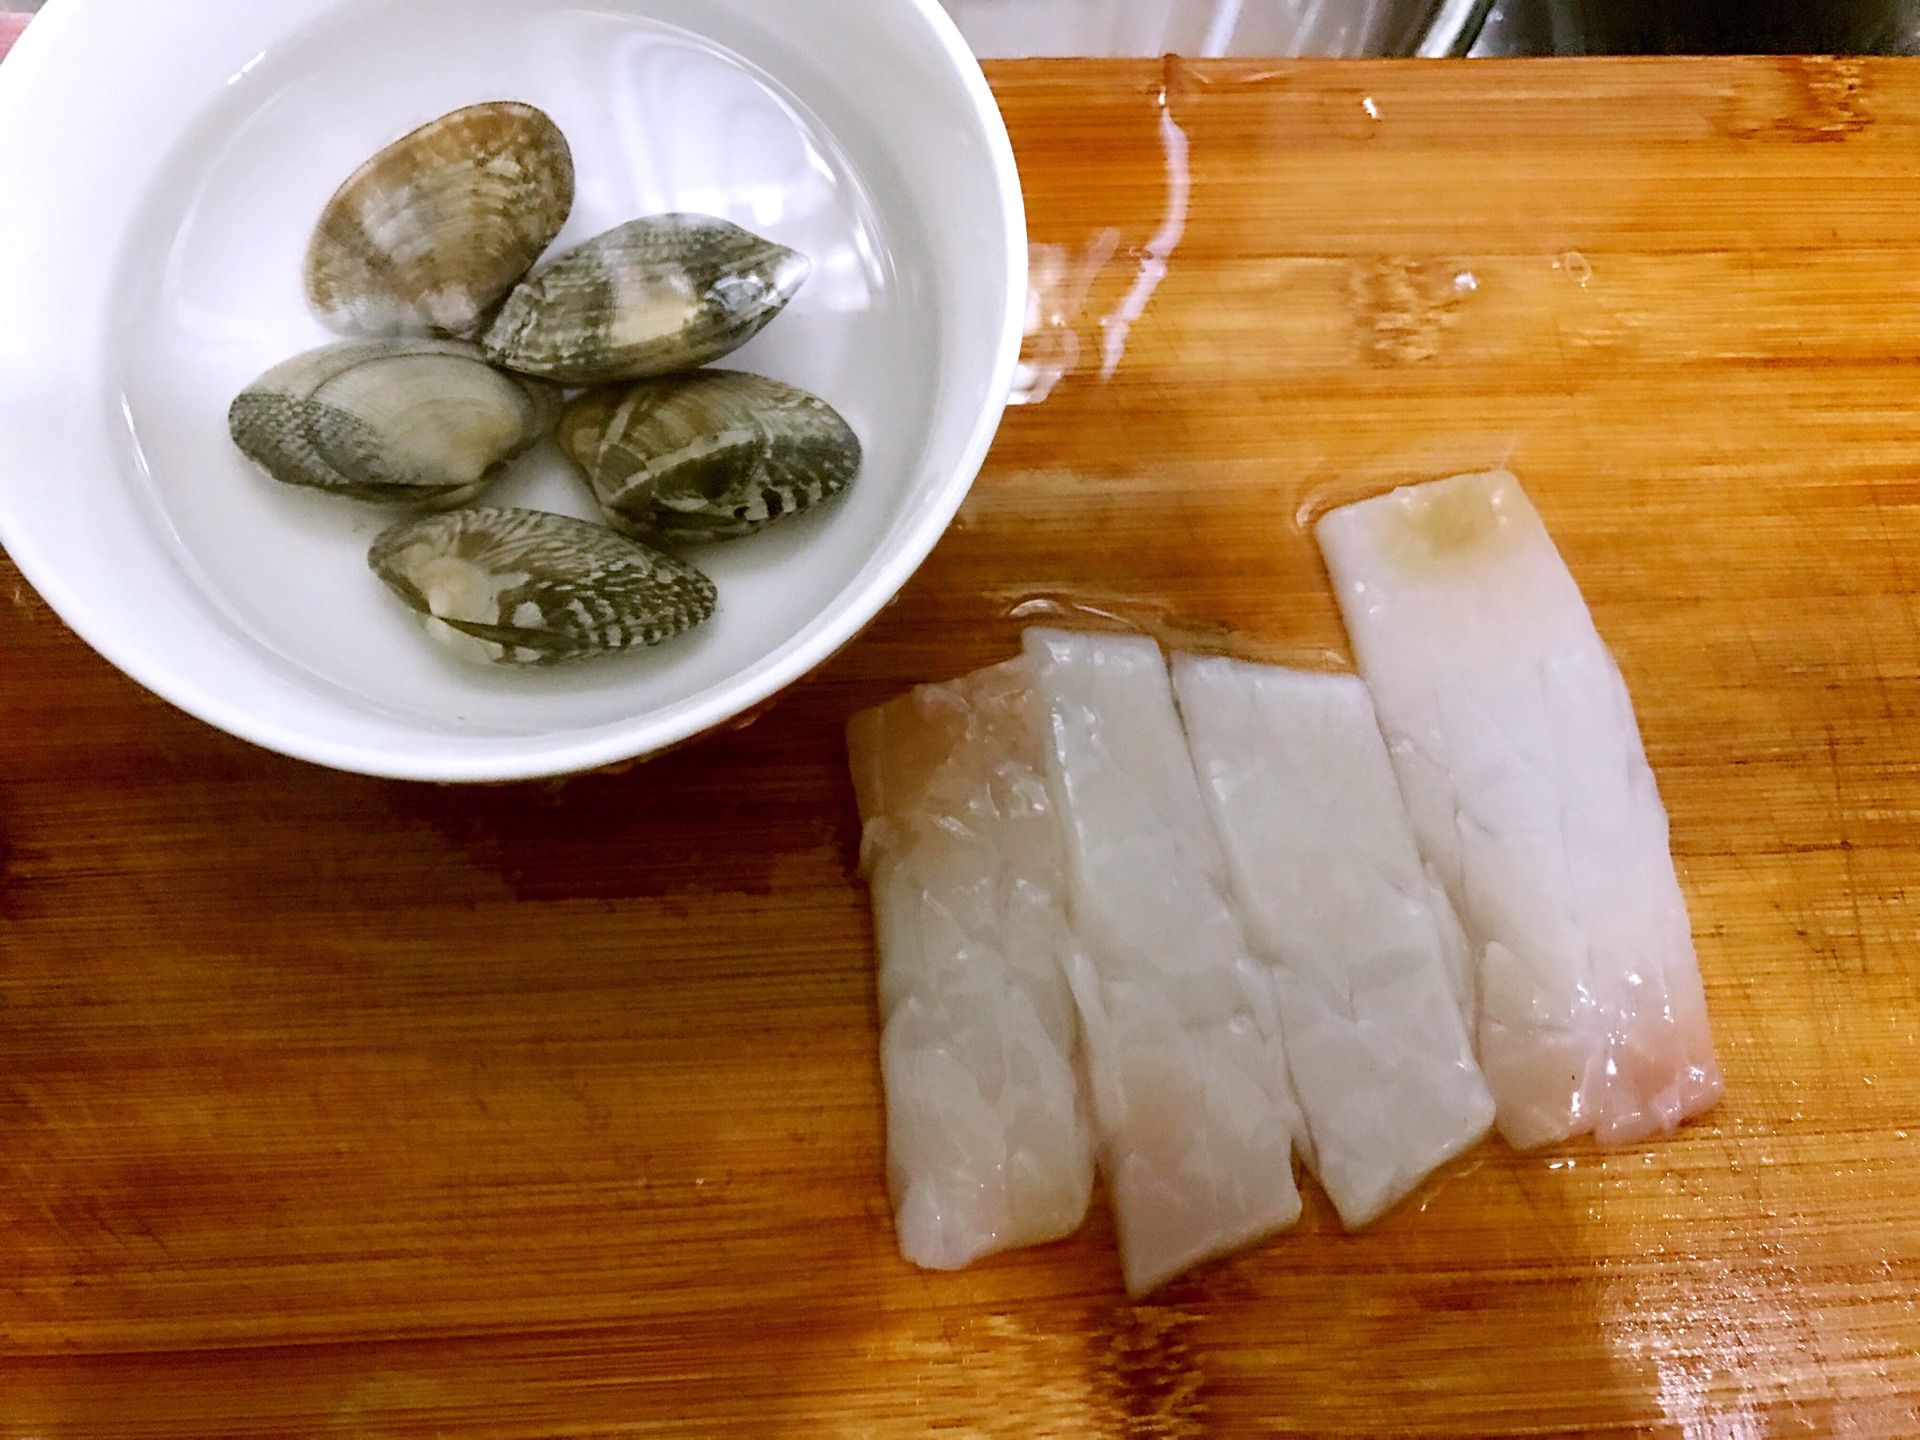 Mưa lạnh học ngay tuyệt chiêu nấu lẩu Thái cực chuẩn cả nhà xuýt xoa ăn sướng miệng - 5